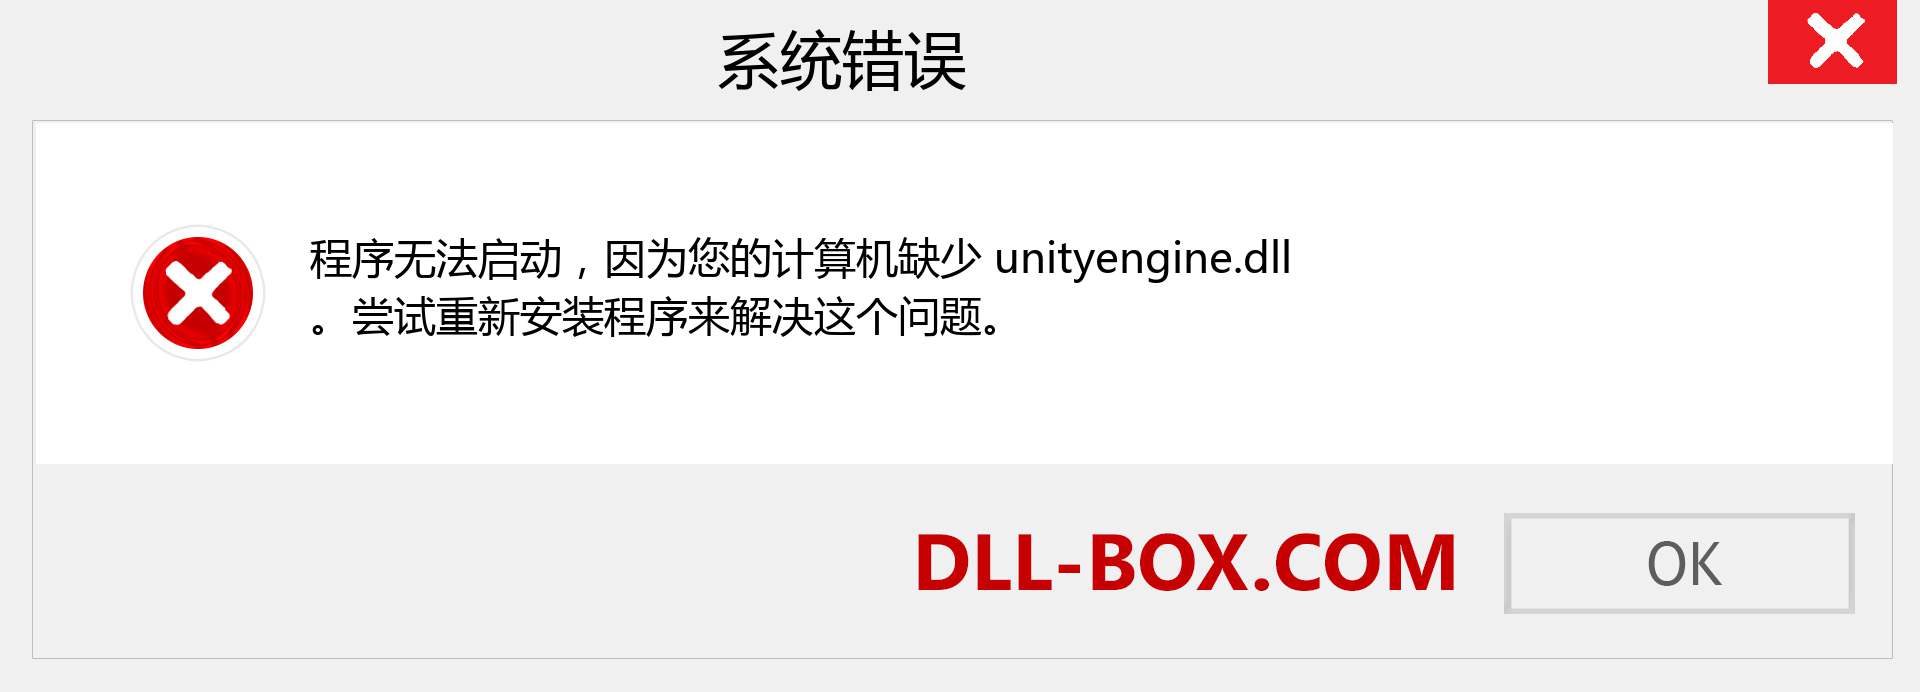 unityengine.dll 文件丢失？。 适用于 Windows 7、8、10 的下载 - 修复 Windows、照片、图像上的 unityengine dll 丢失错误